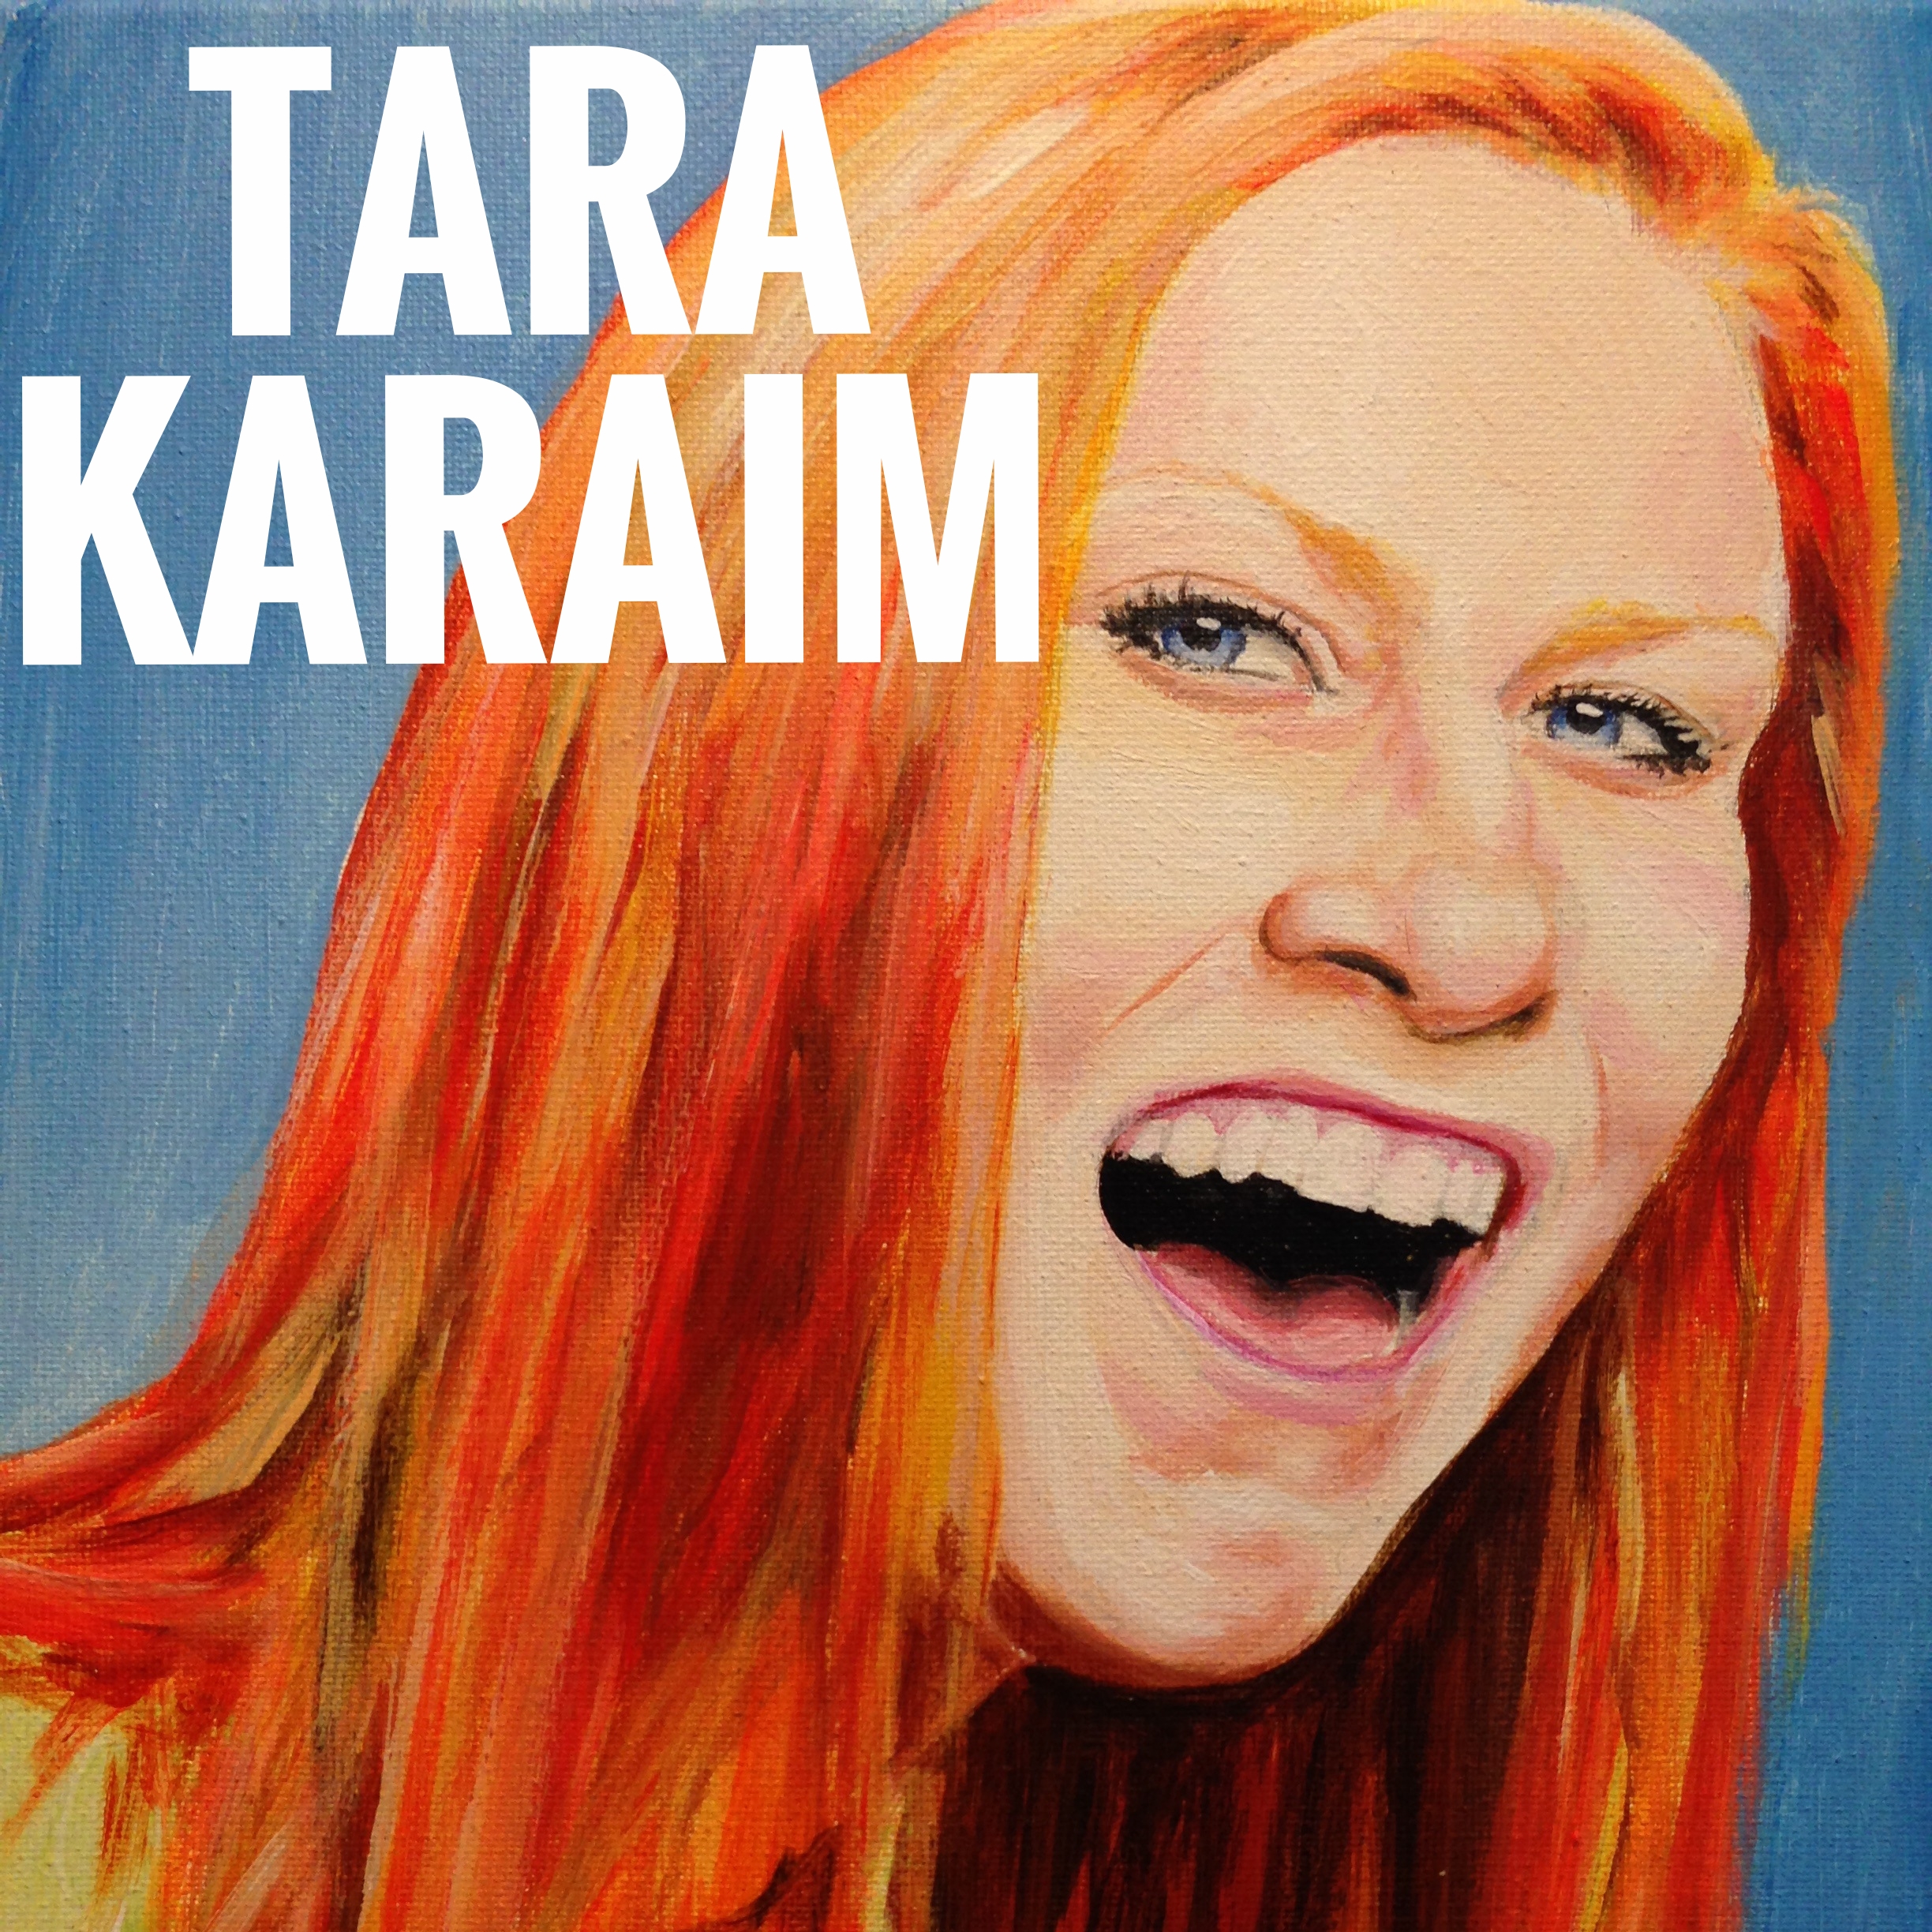 Tara Karaim